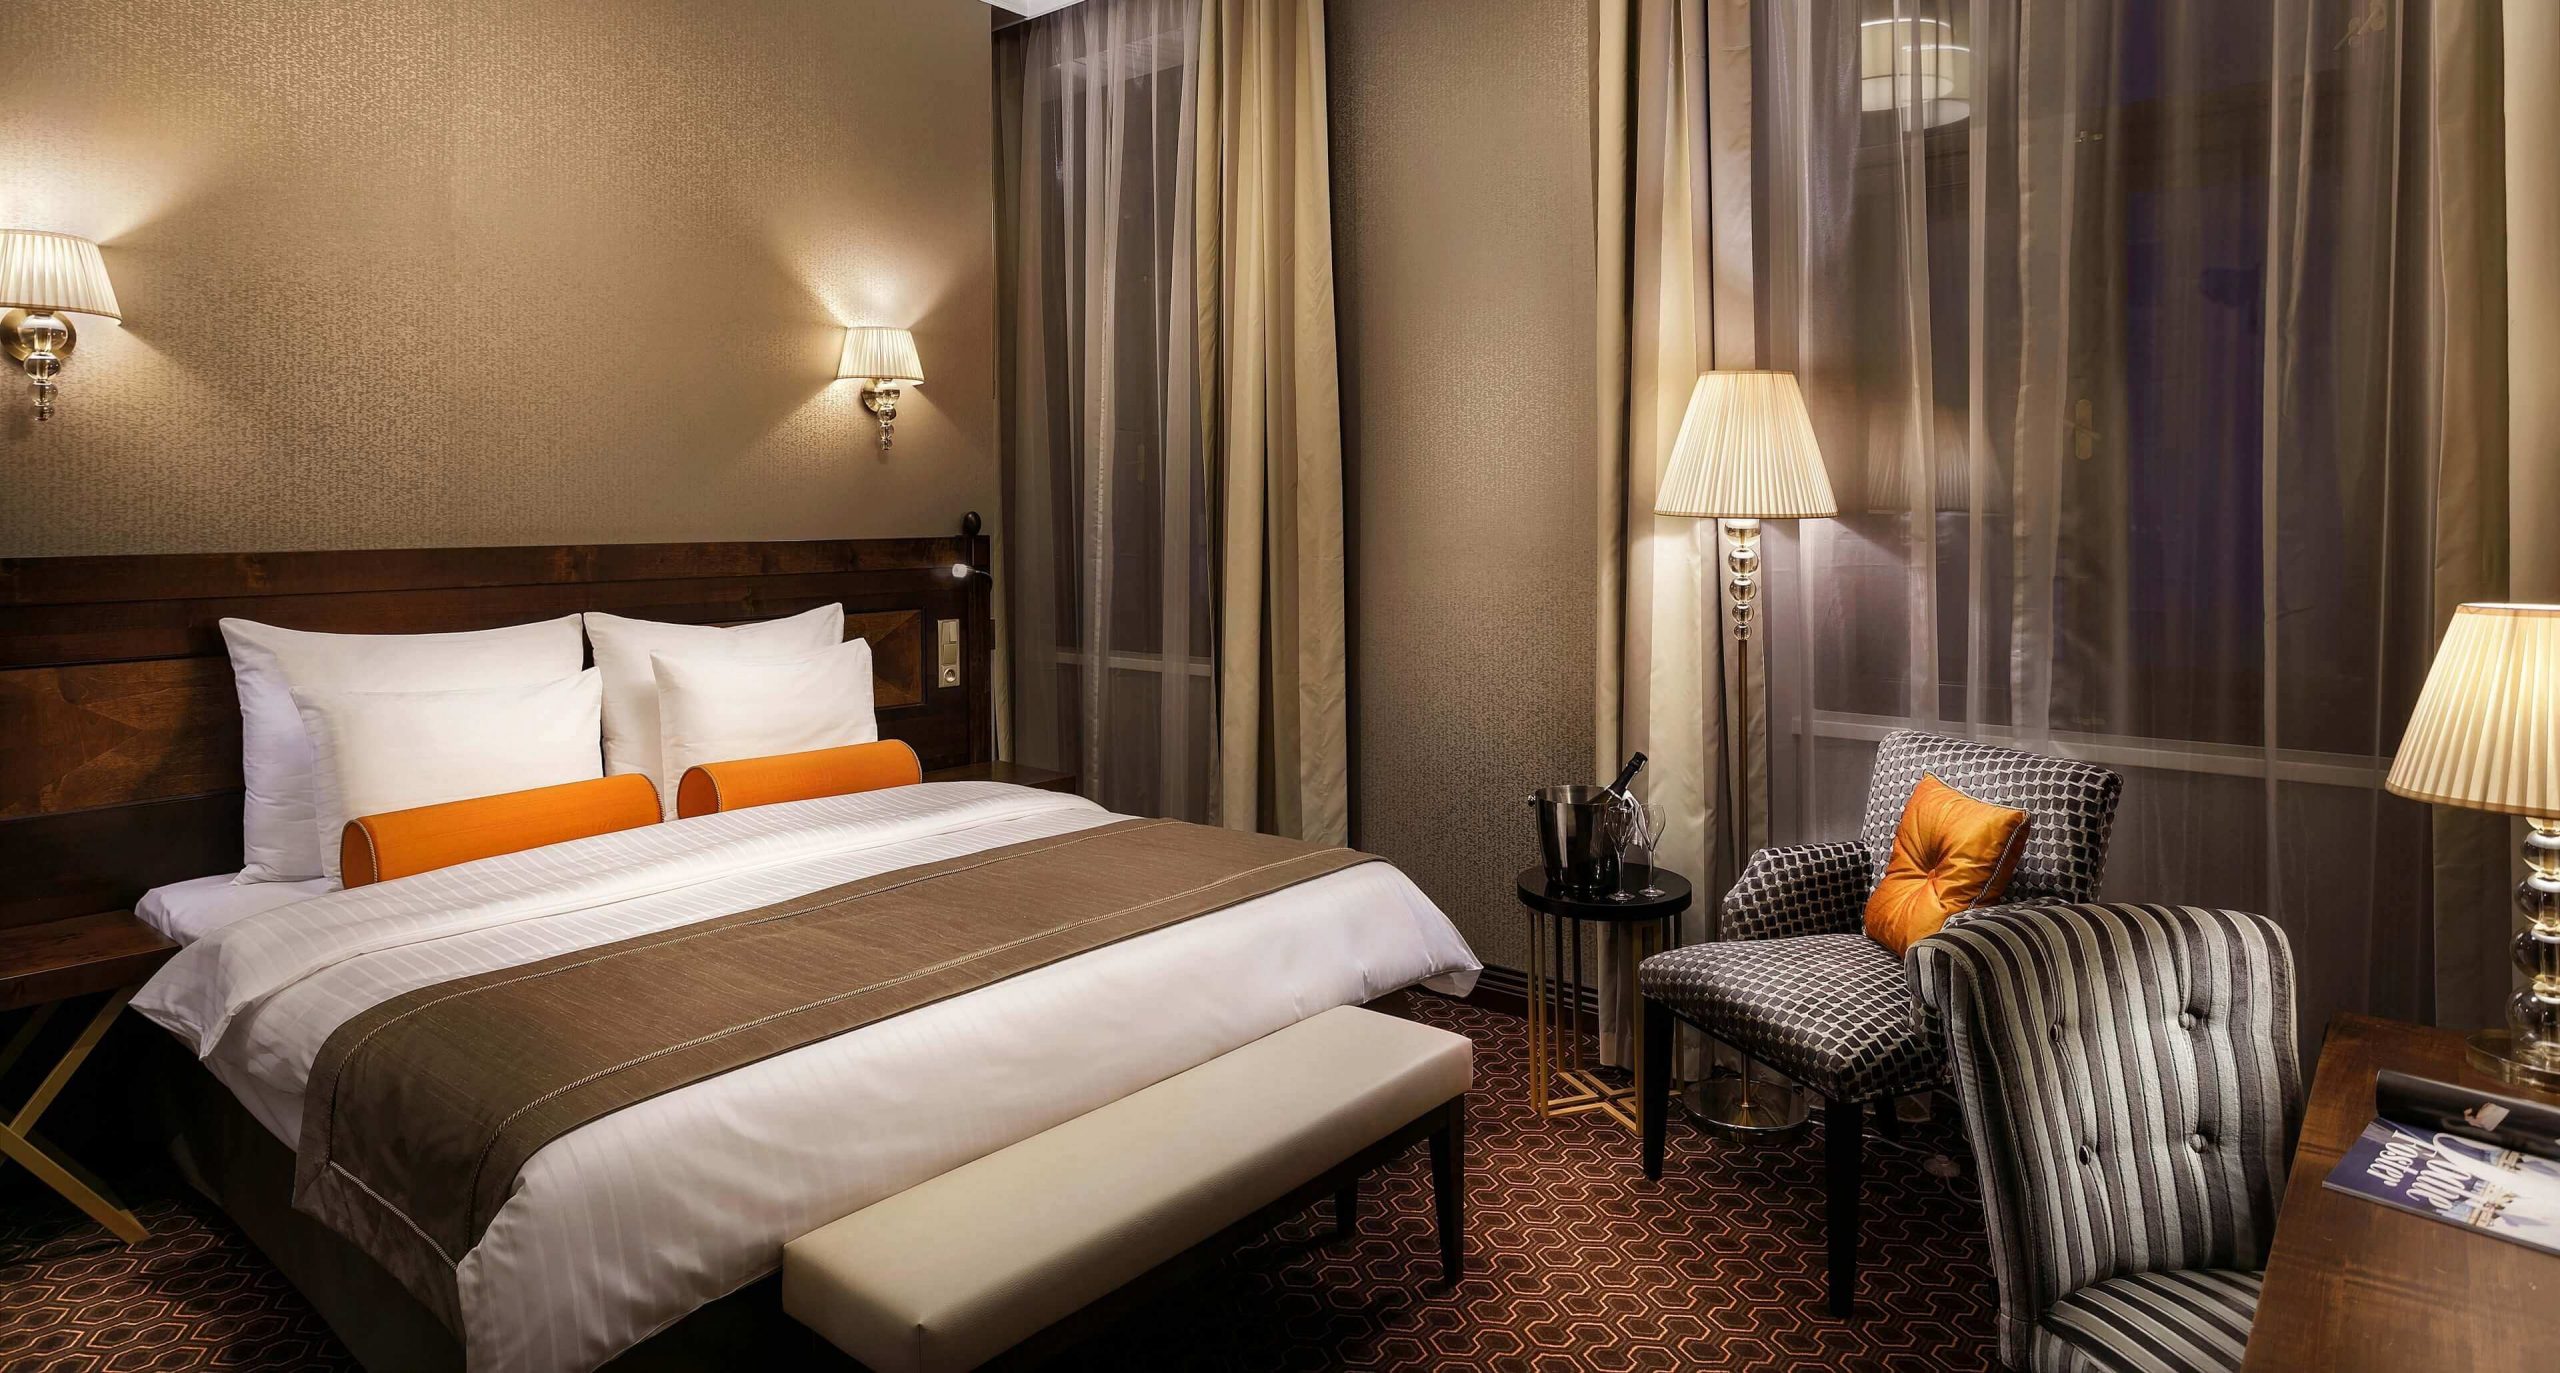 Hotelový pokoj vybavený luxusní vysokou postelí.